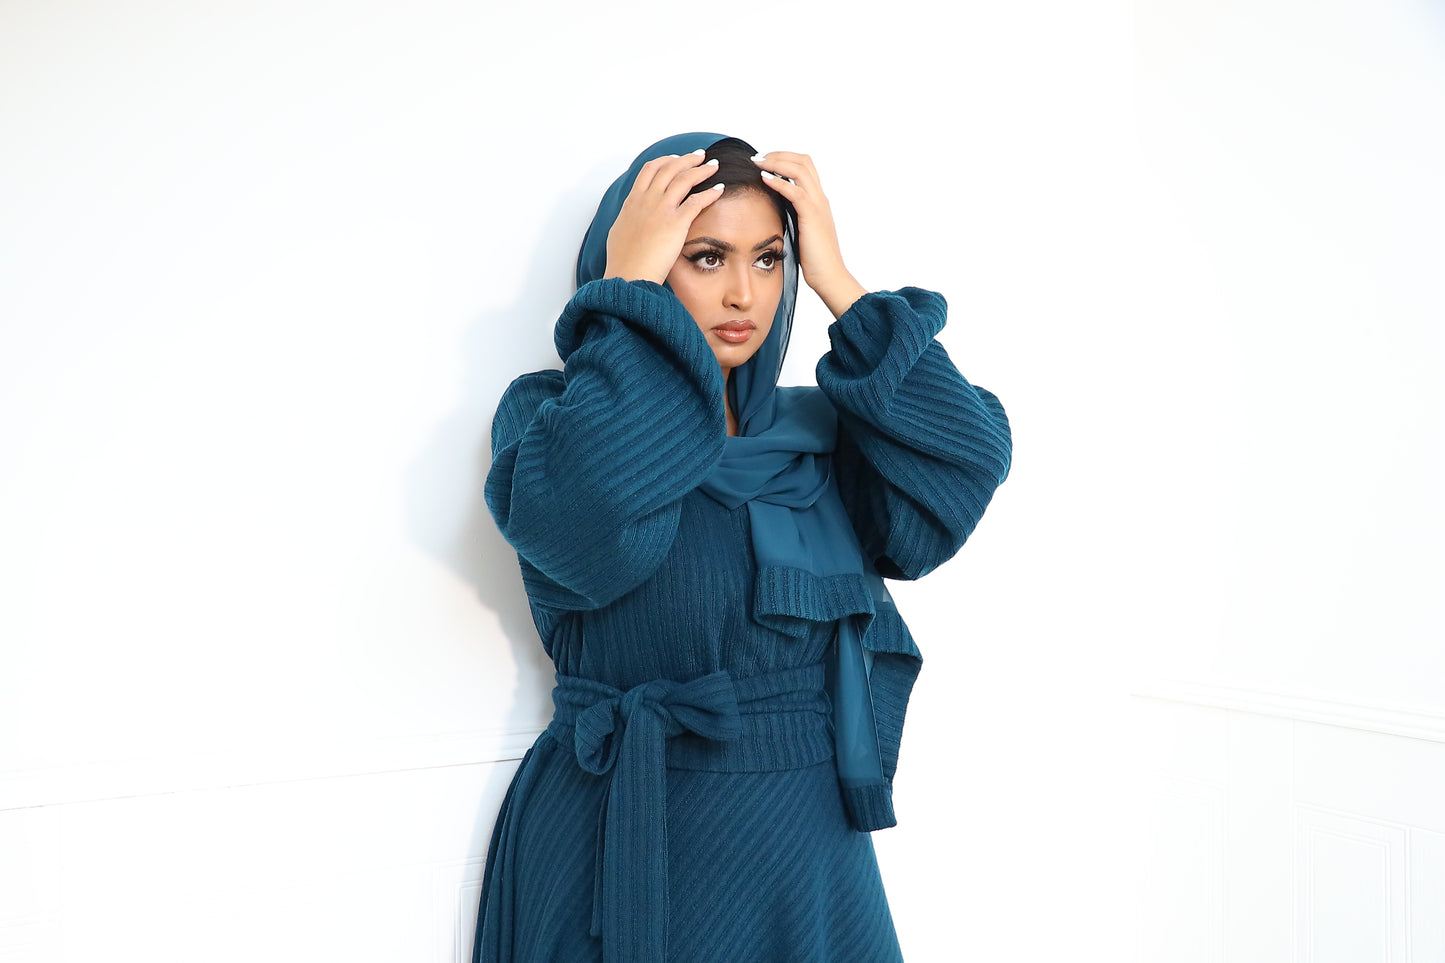 Amal Abaya knit Jersey : Teal Green Ribbed